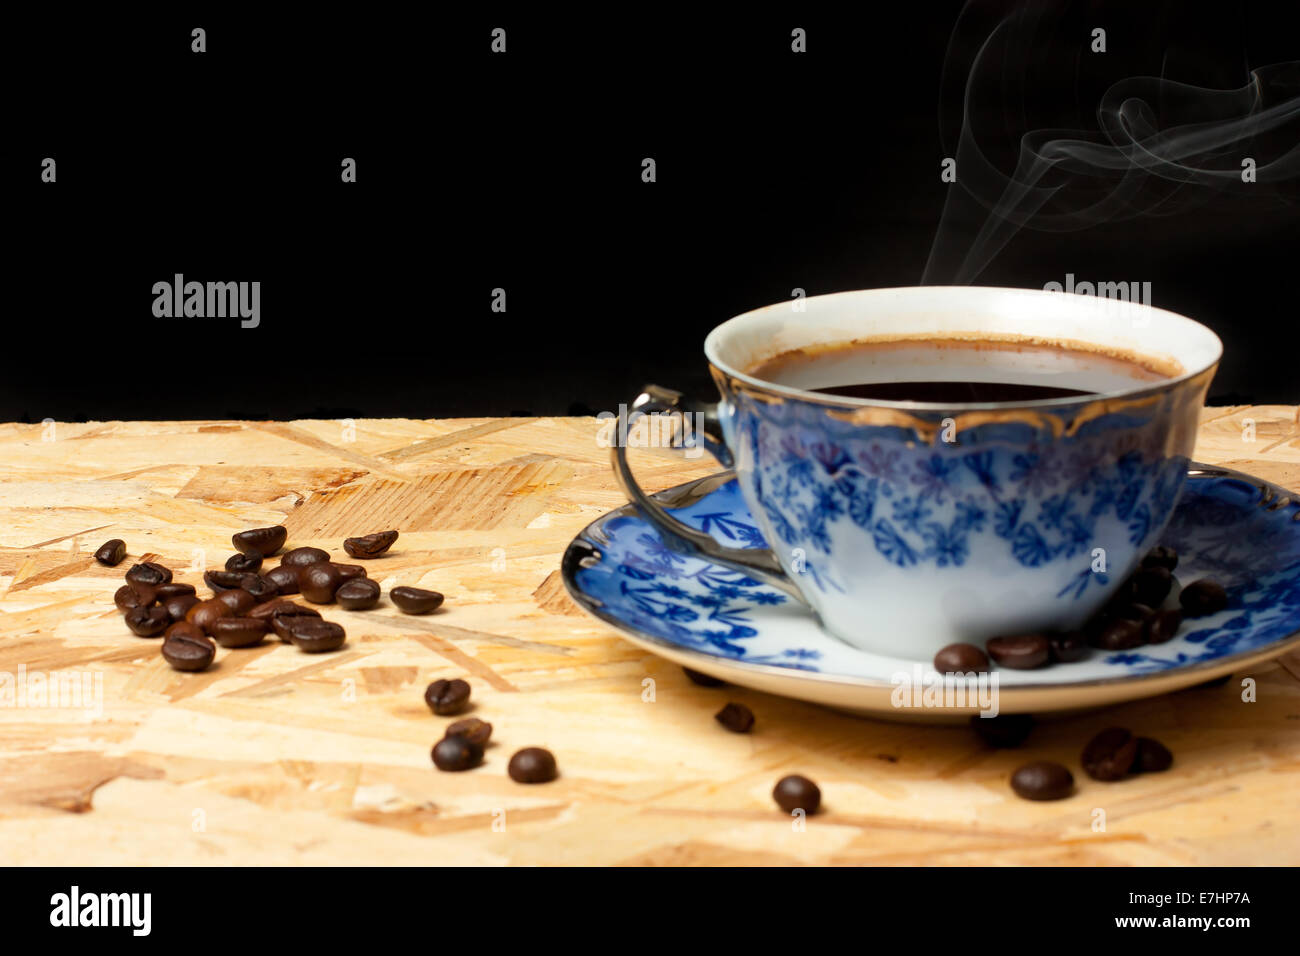 Une tasse de café et des haricots sur une table en bois avec fond noir Banque D'Images